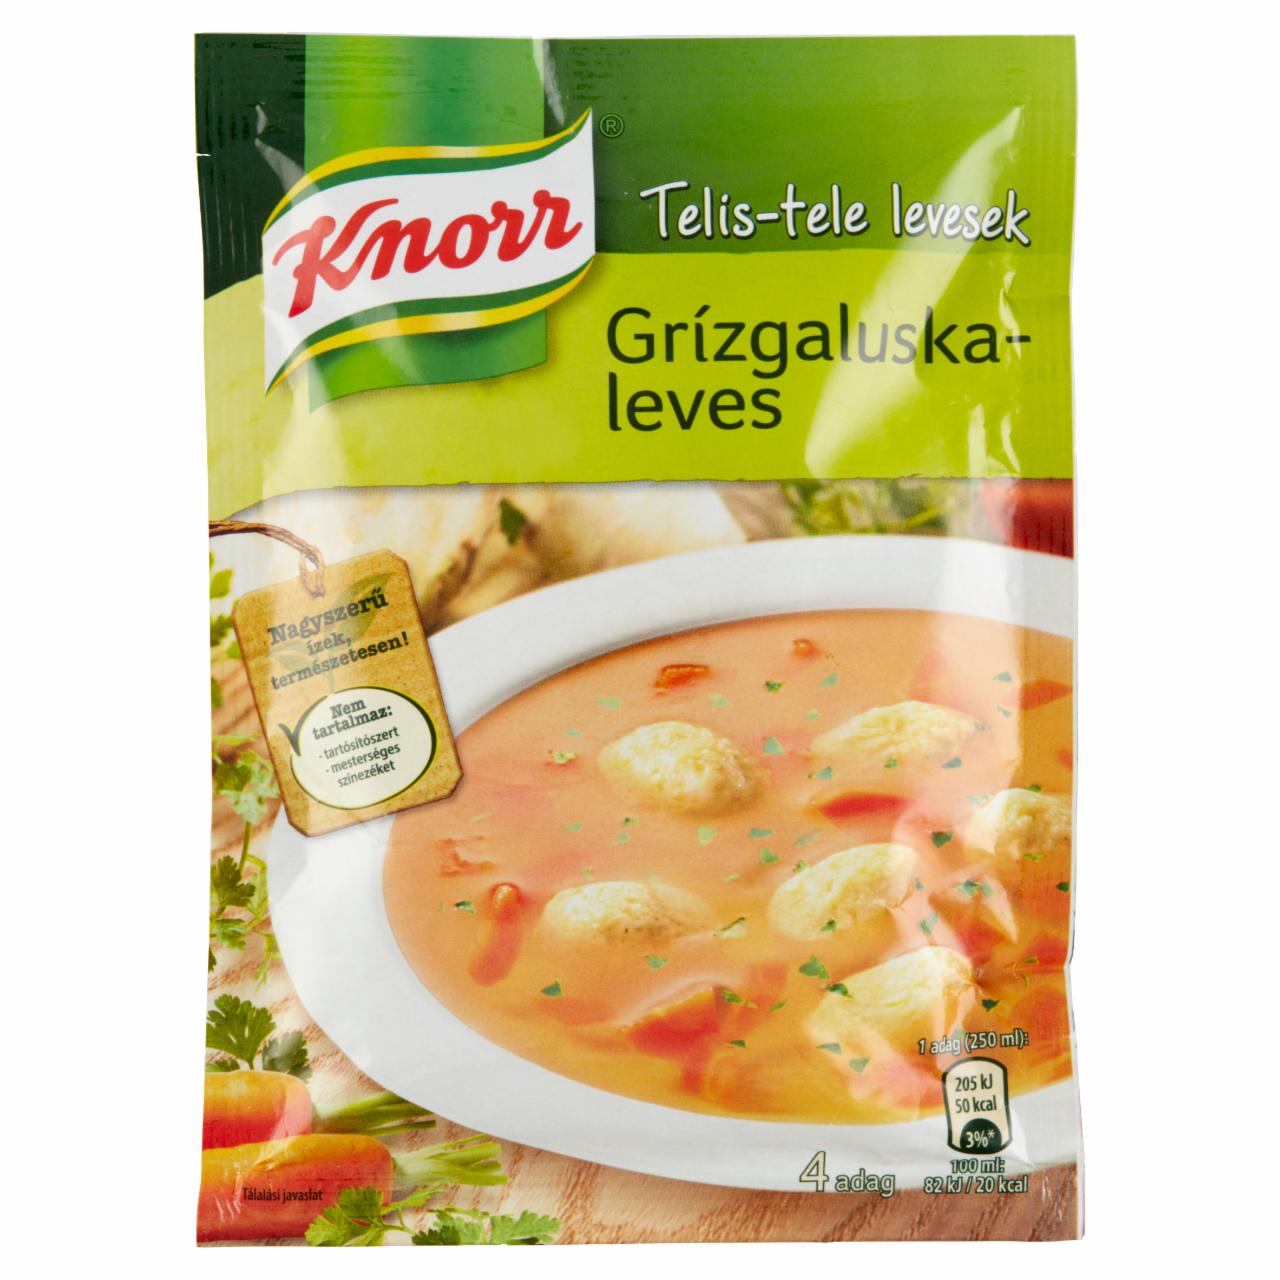 Képek - Telis-Tele Levesek grízgaluskaleves Knorr